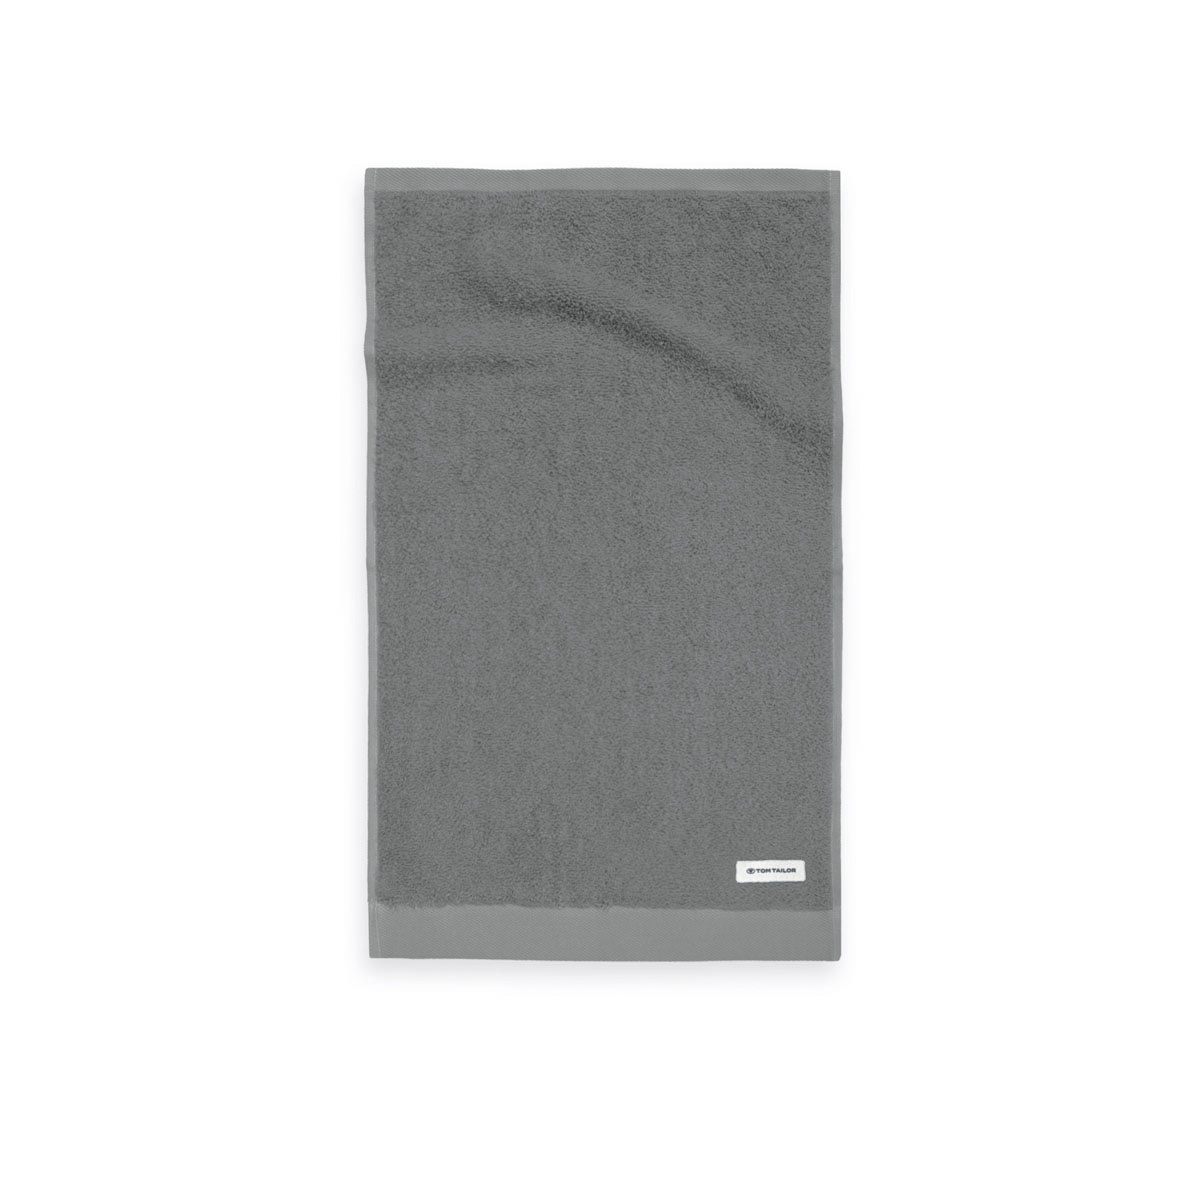 Tom Tailor Moody Grey törölköző, 30 x 50 cm, 6 db-os szett, 30 x 50 cm